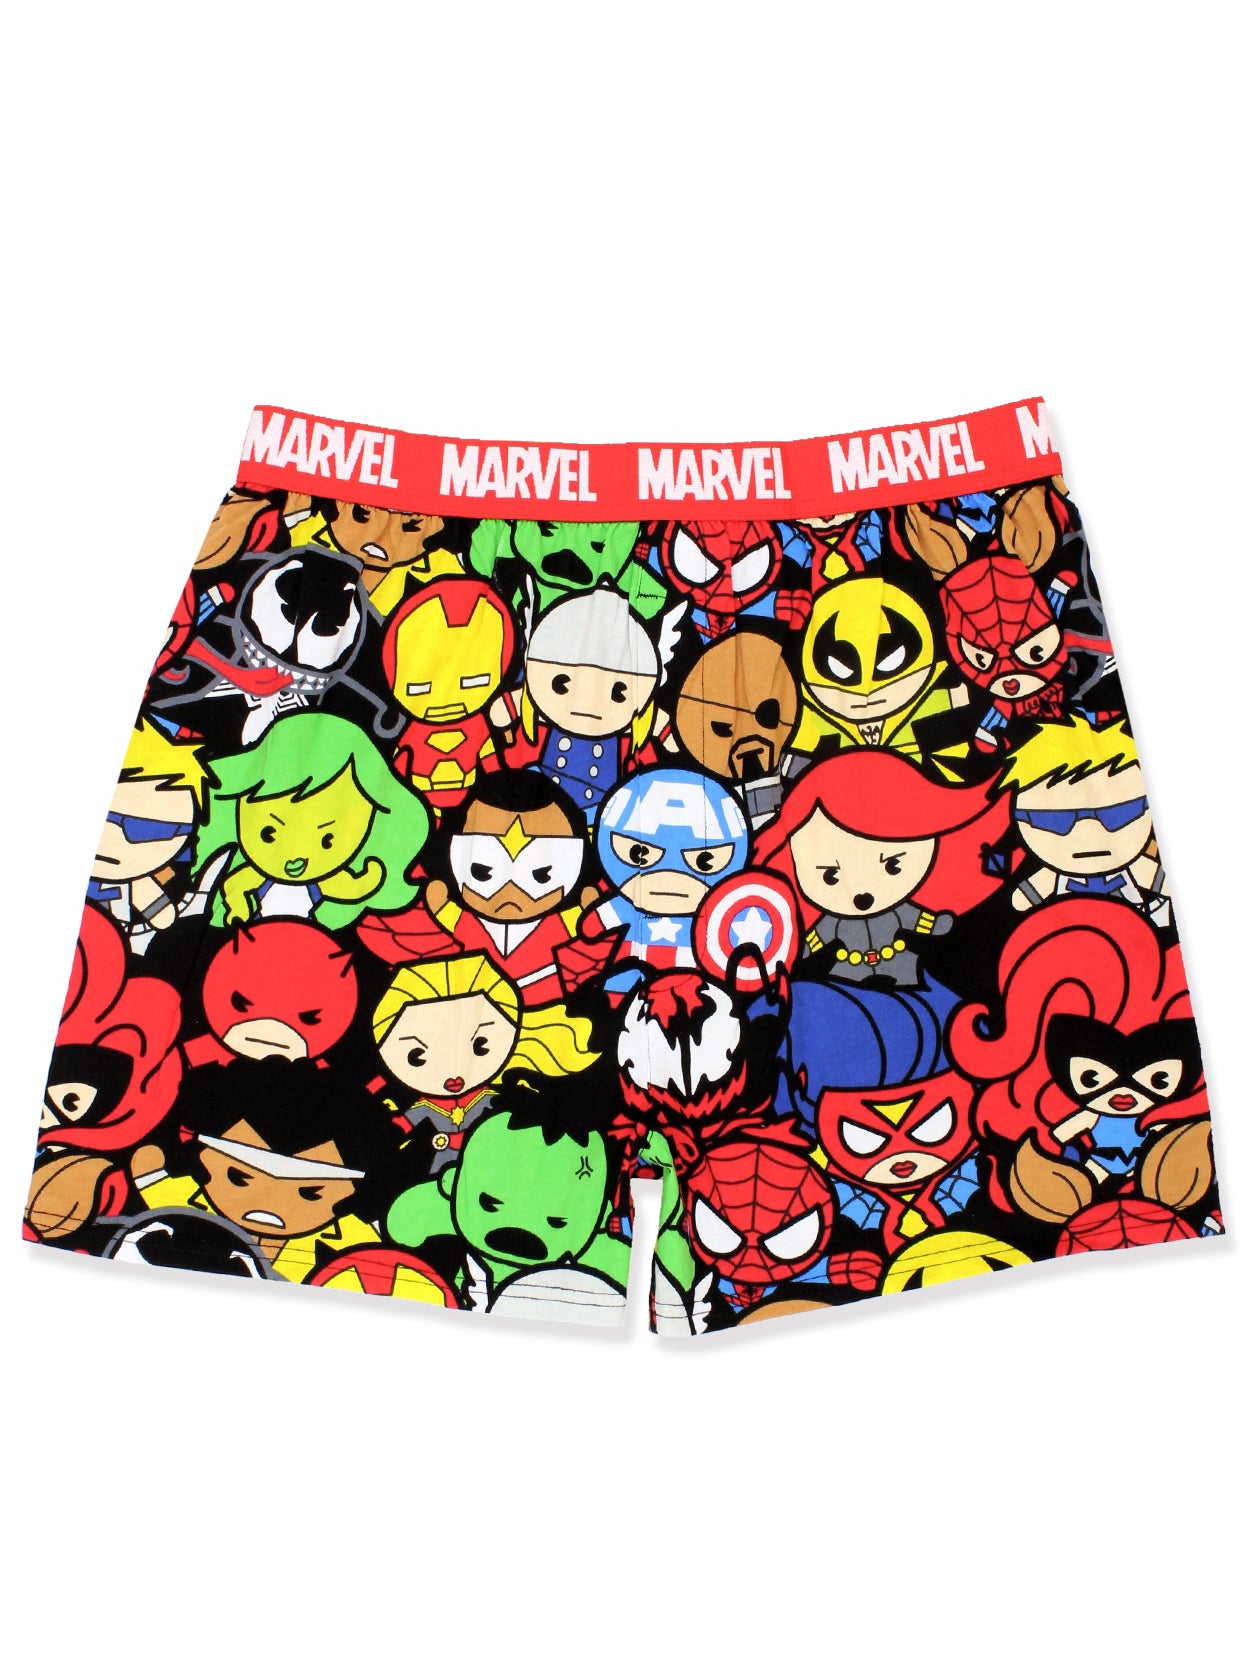  Marvel Boys Pants 5 Pack Cotton Briefs Avengers